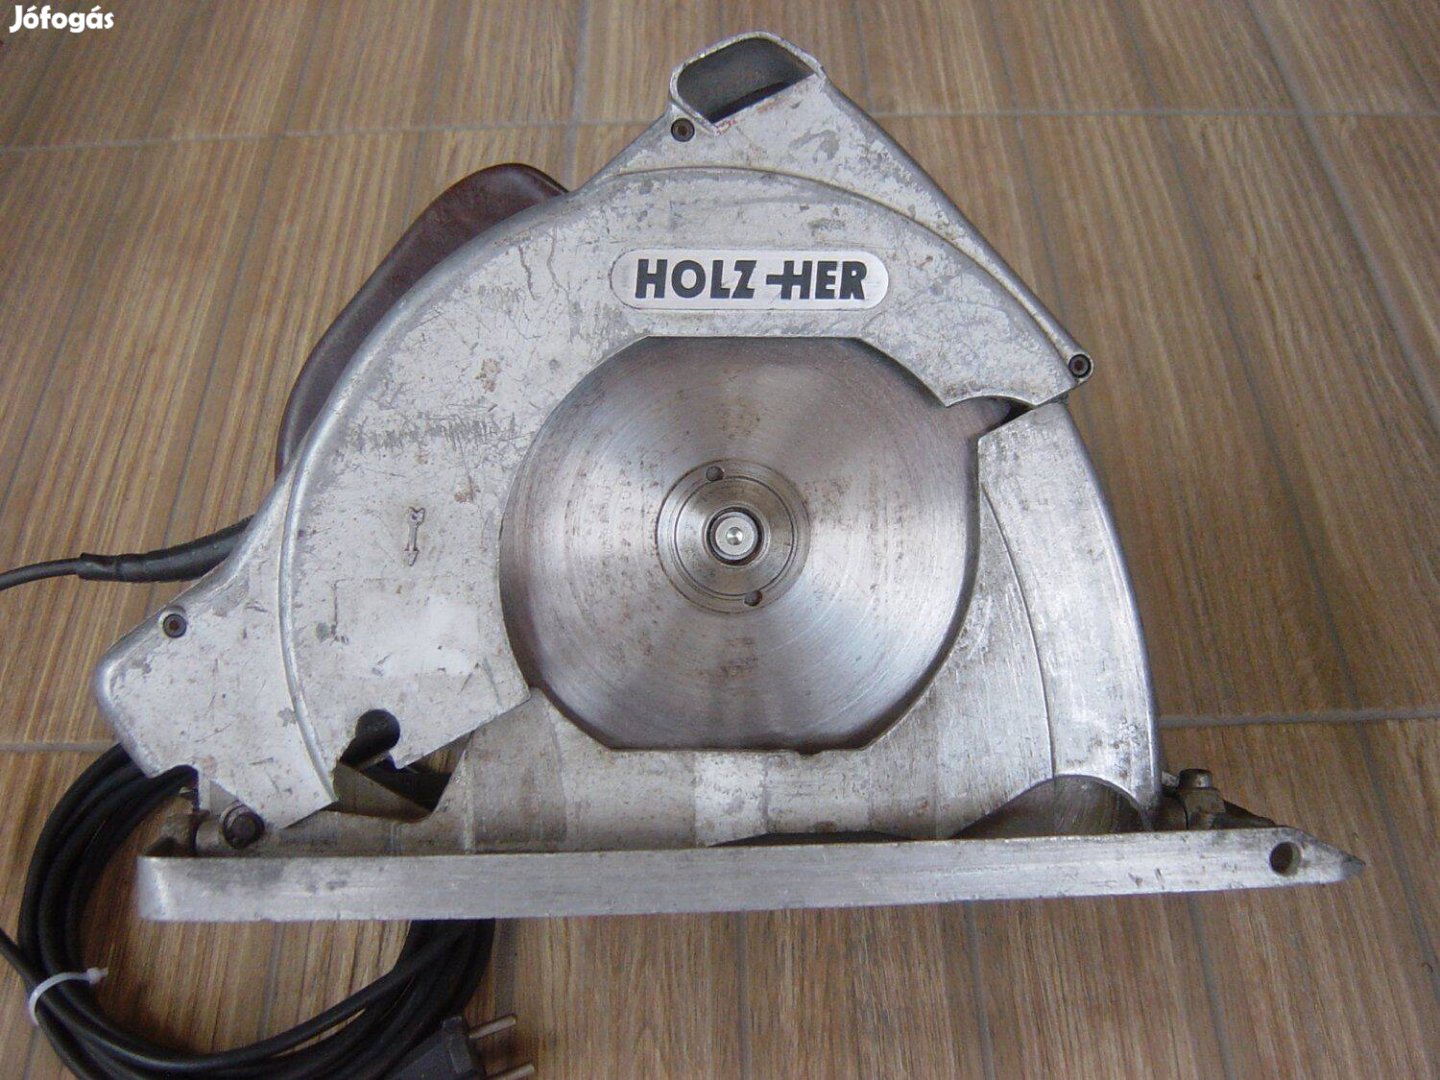 Holz-Her Ipari merülő körfűrész, 210mm-es